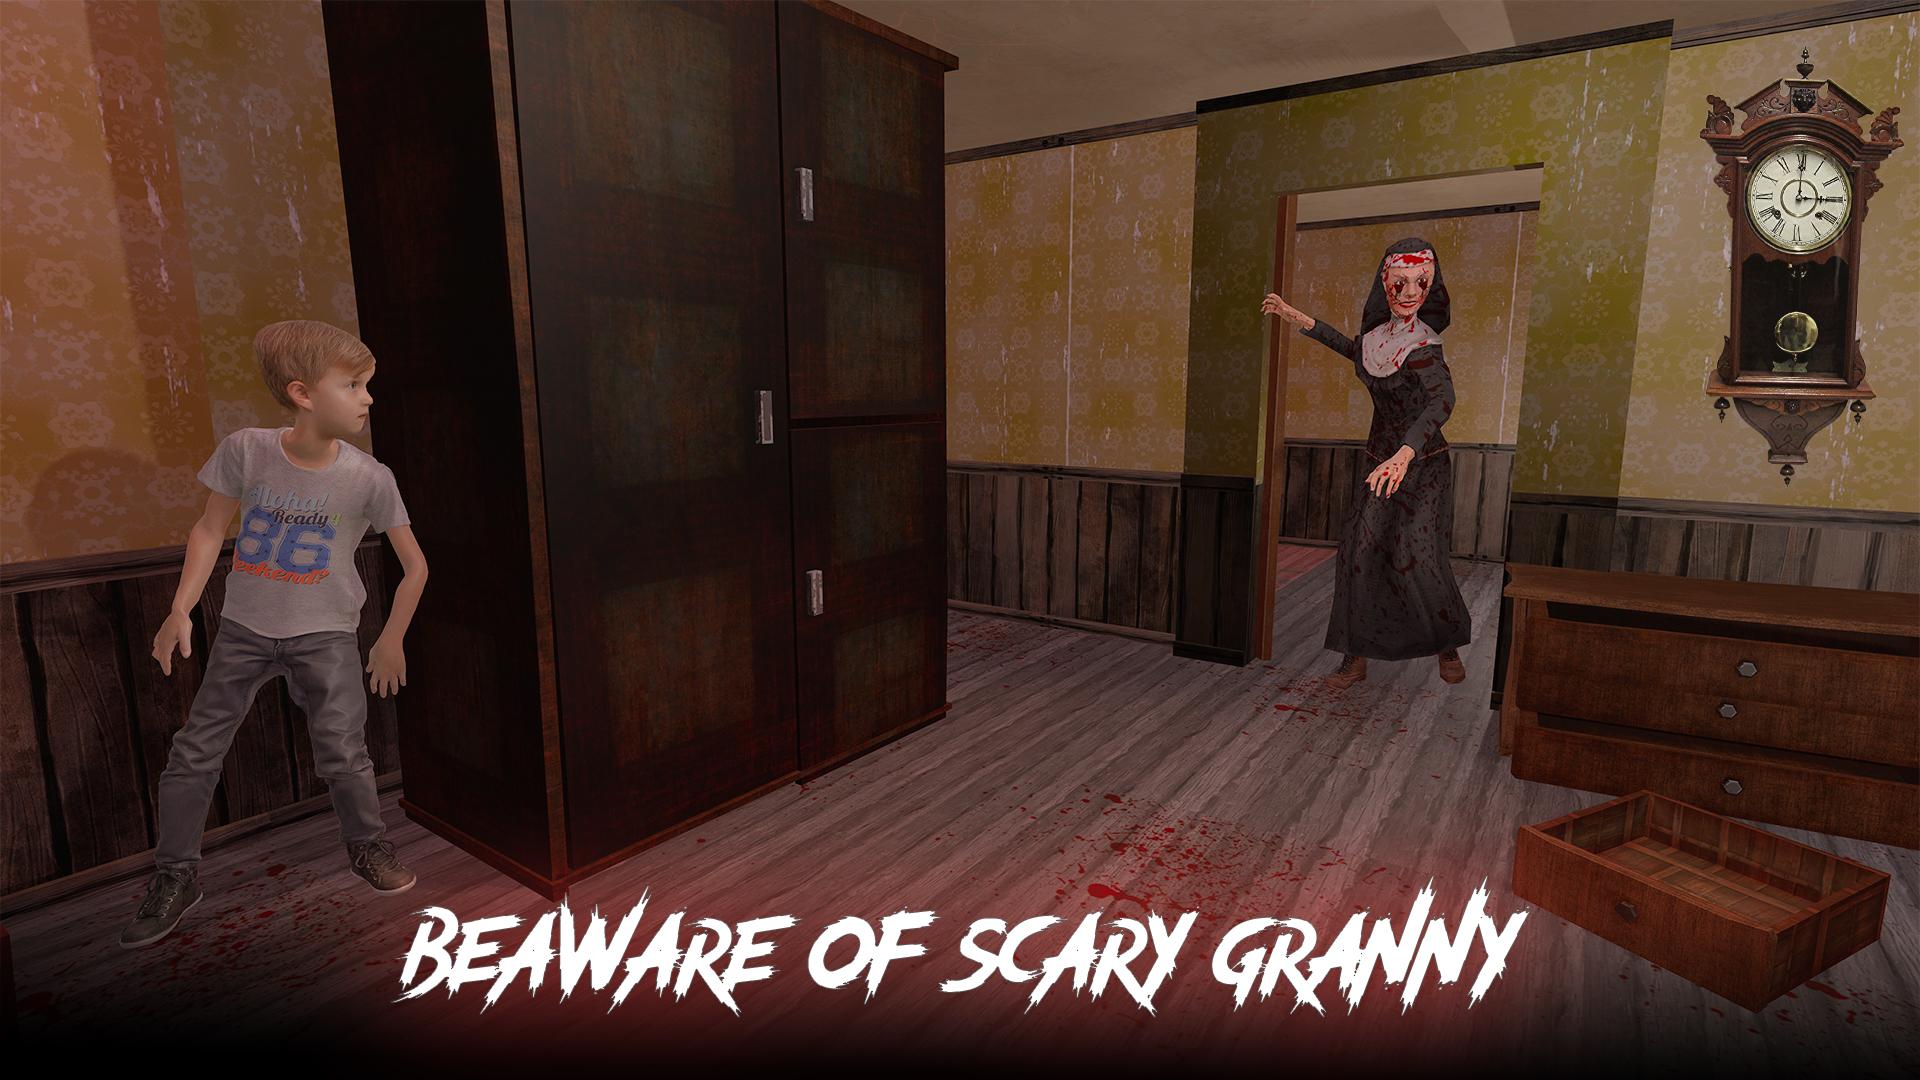 Как убрать гренни из игры. Scary granny Horror 2 Mod APK V1.0 (новый мод). Прохождение Scary granny -Hide and seek.